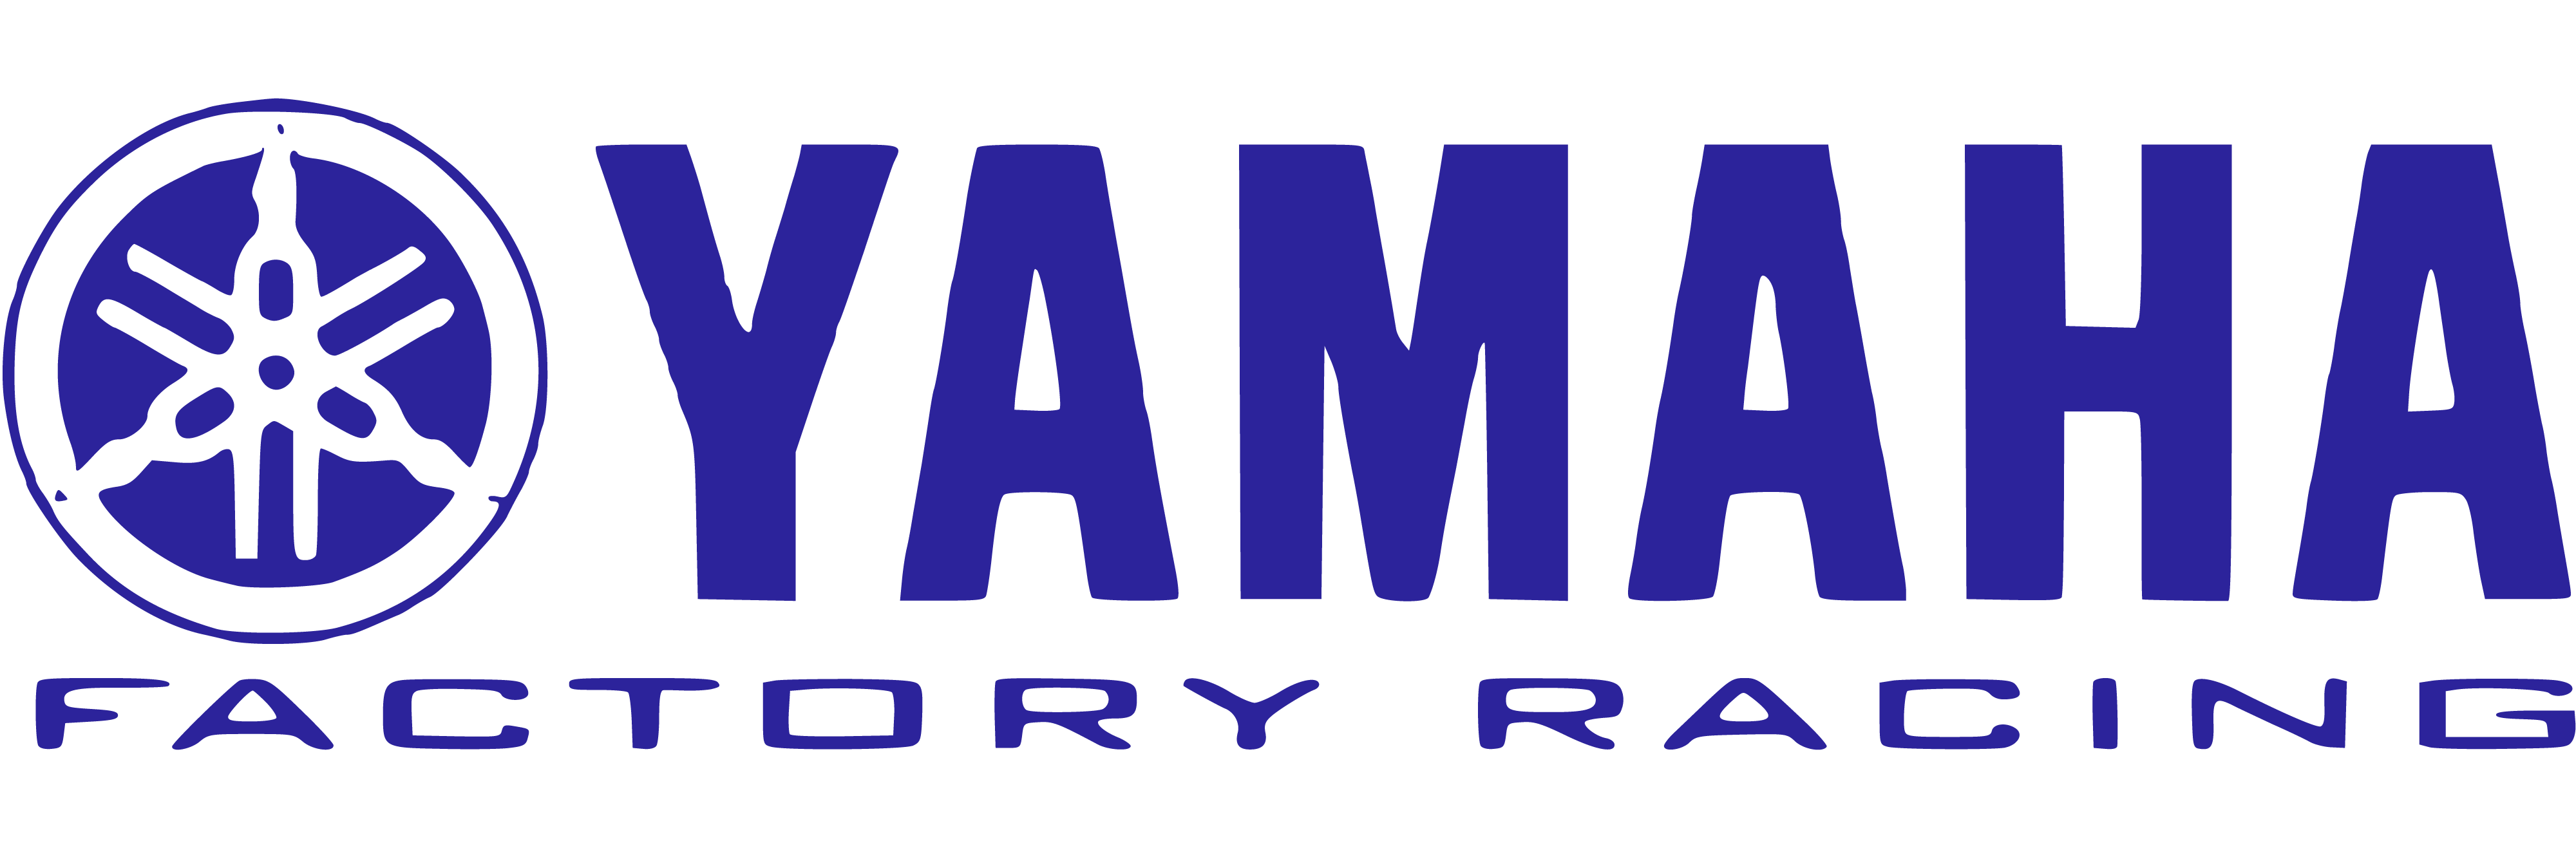 Yamaha Factory Racing Logo Png Yamaha Factory Racing Logo Png The Best Porn Website